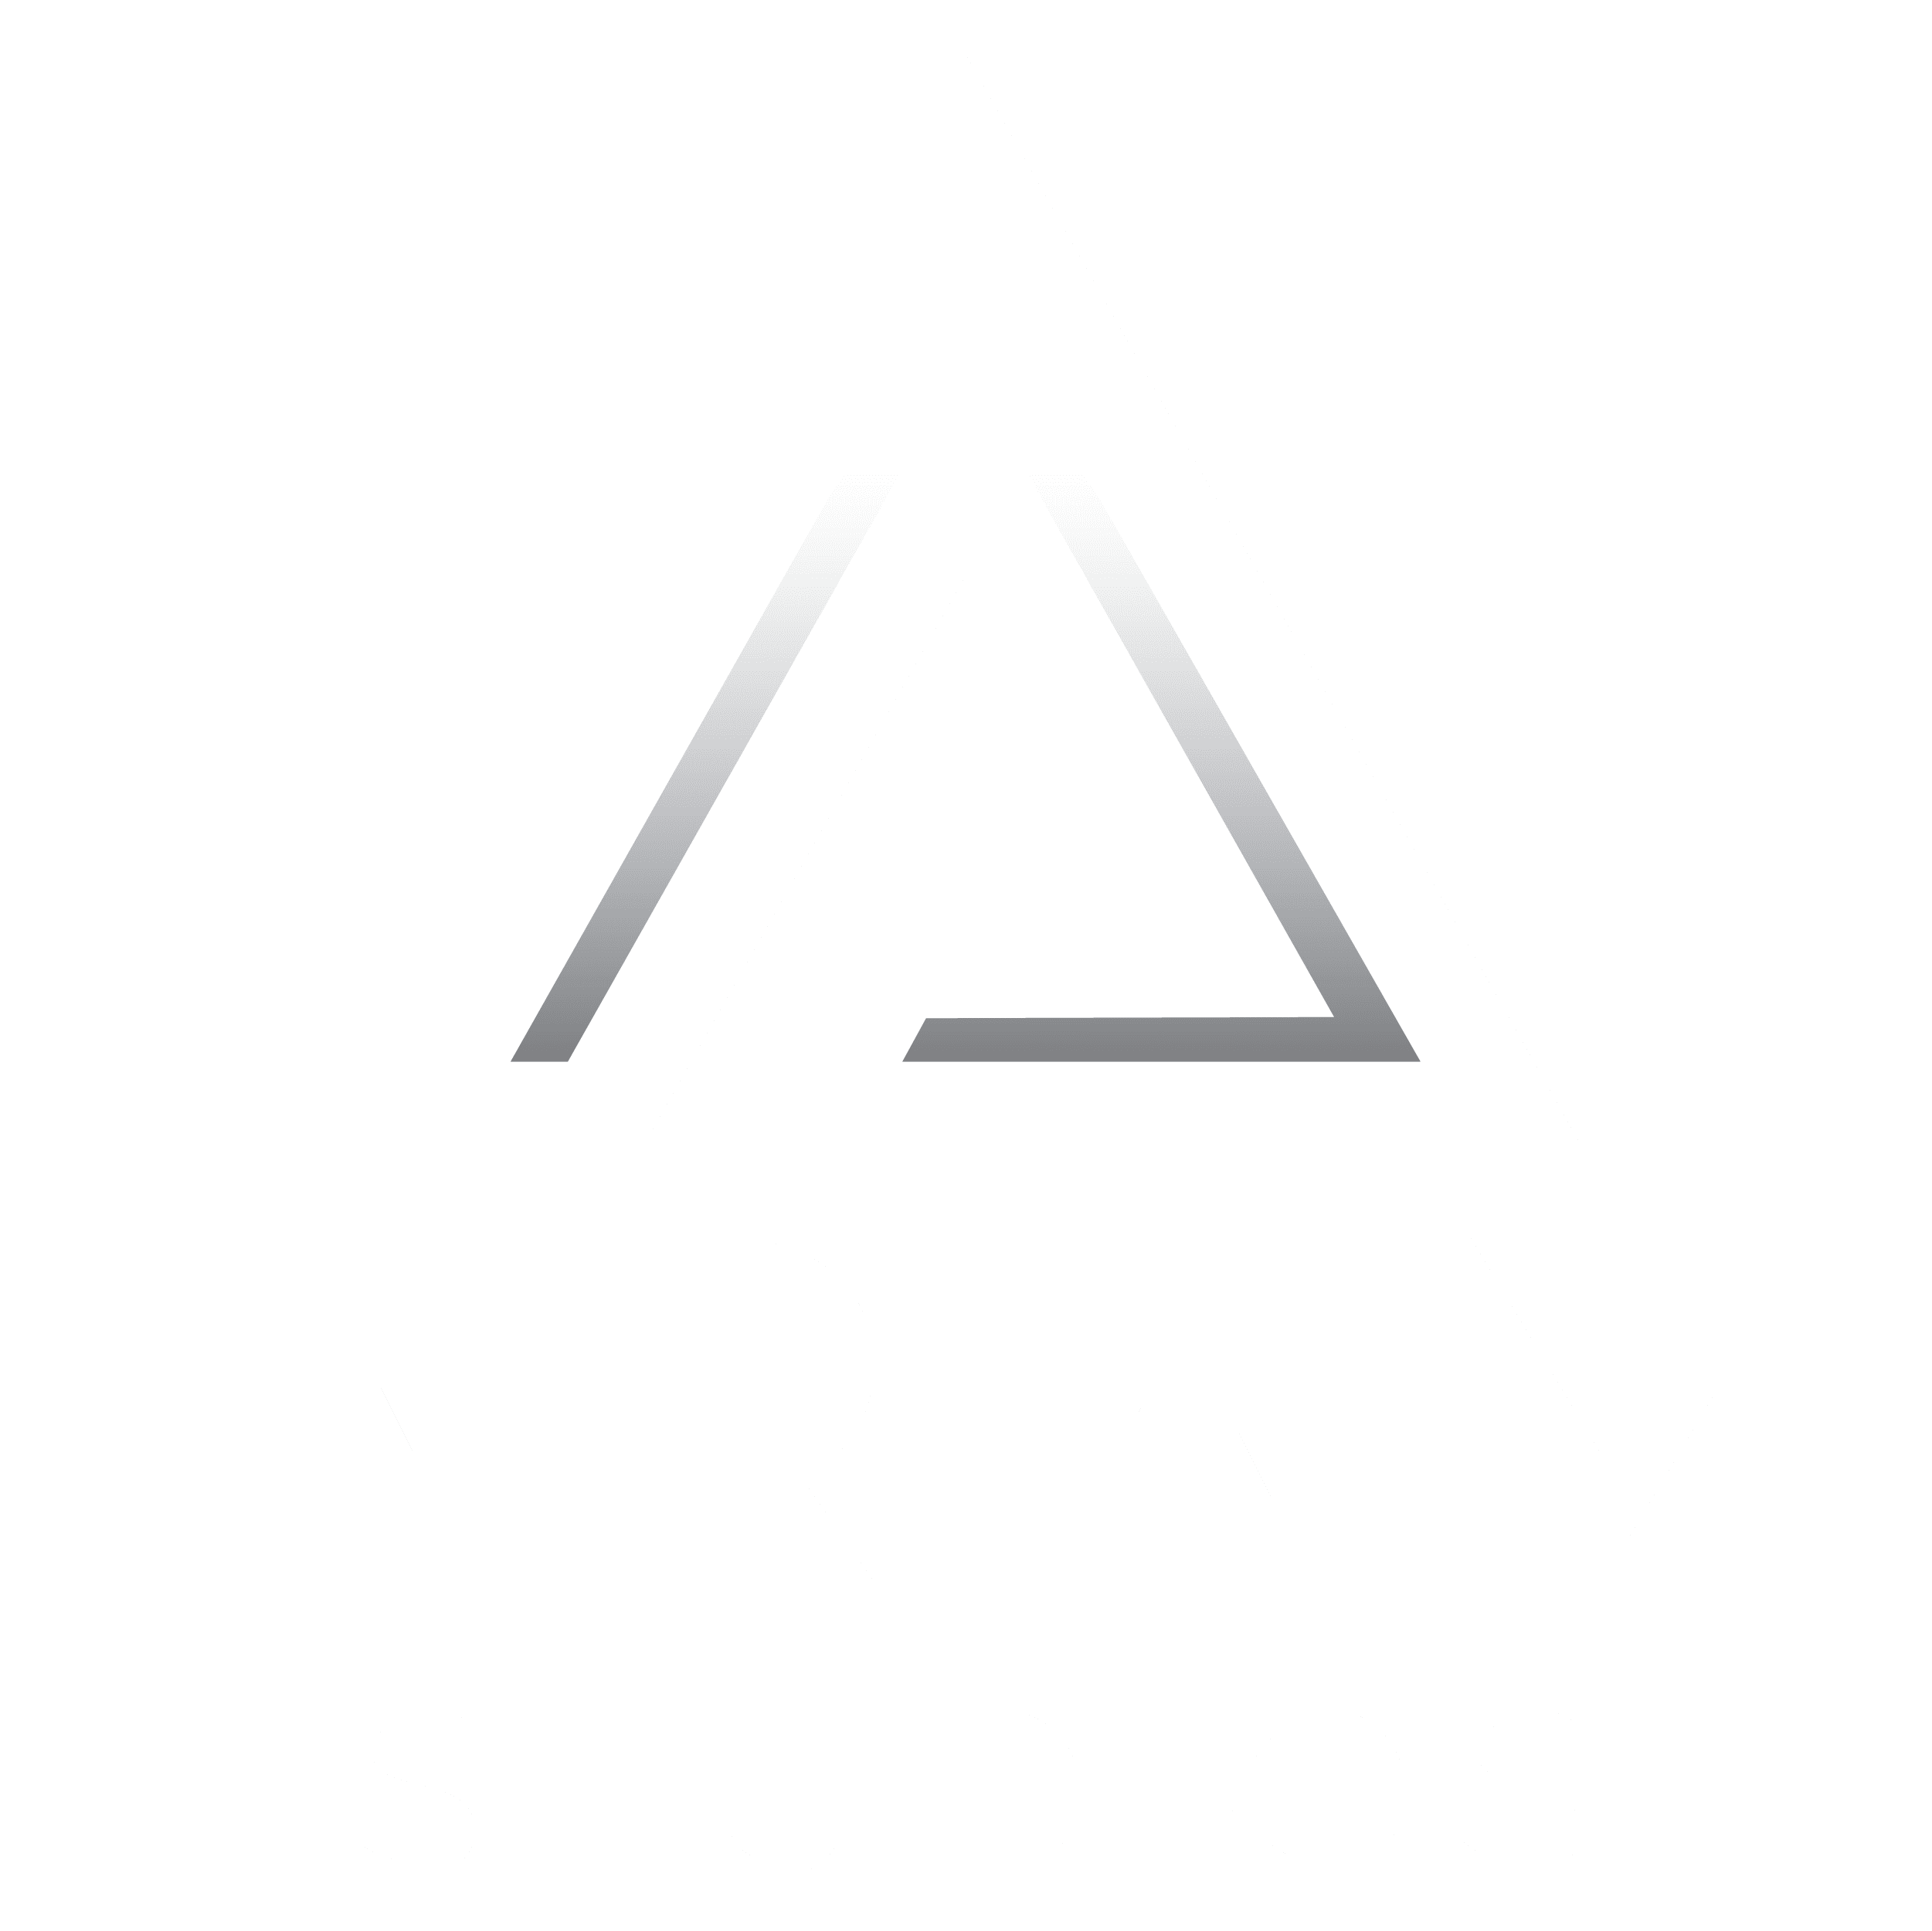 Aram Studios logo on white